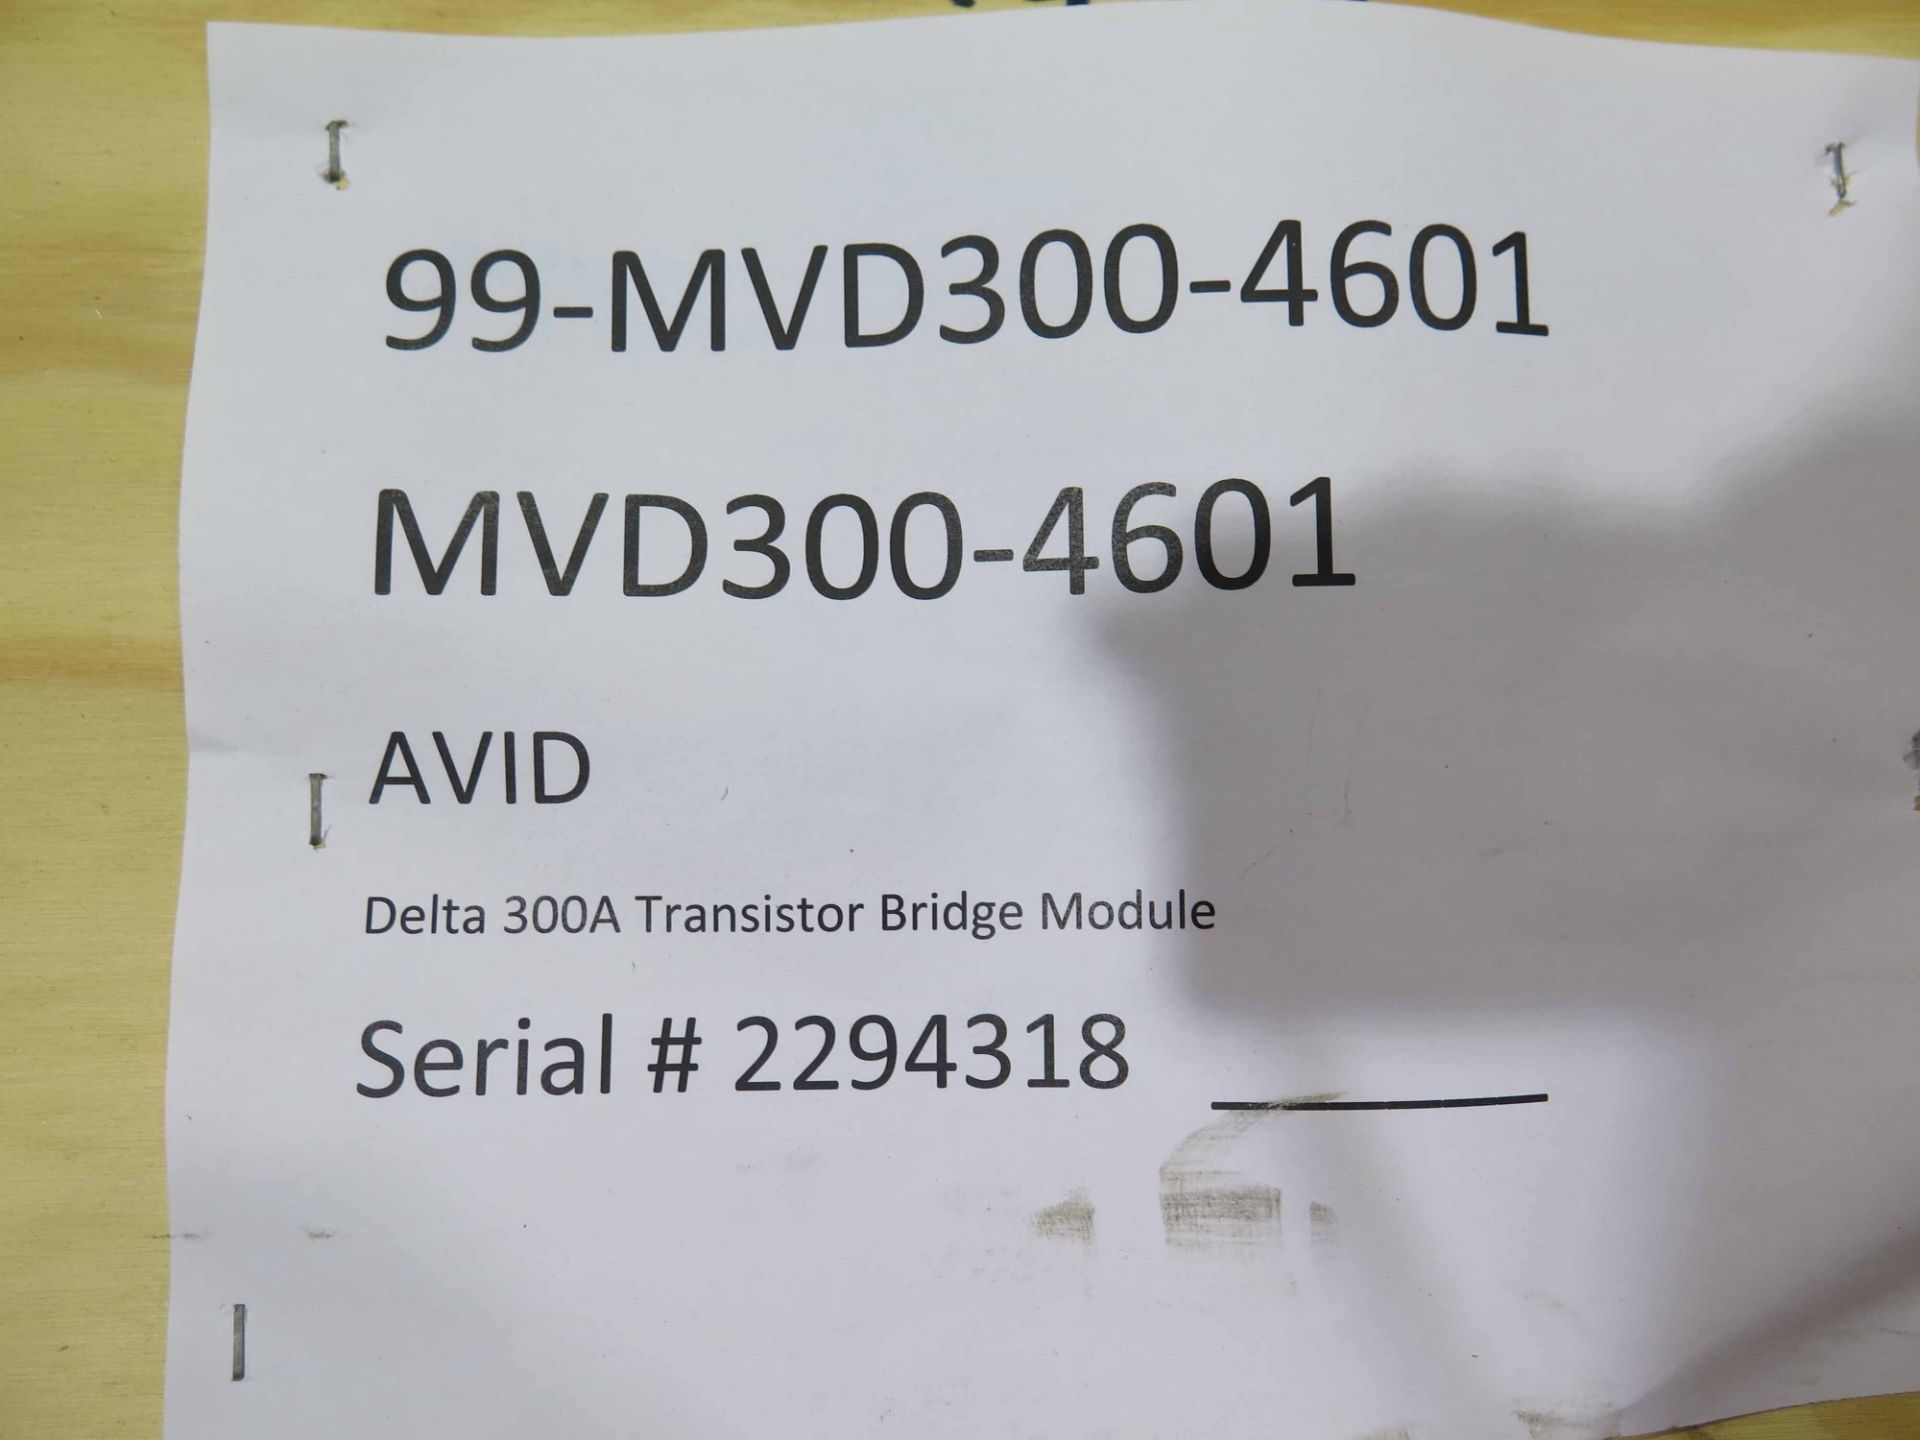 RECTIFIER, AVID MDL. MVD300-4601, delta 300A, transistor bridge M, S/N 2294318 - Image 2 of 2